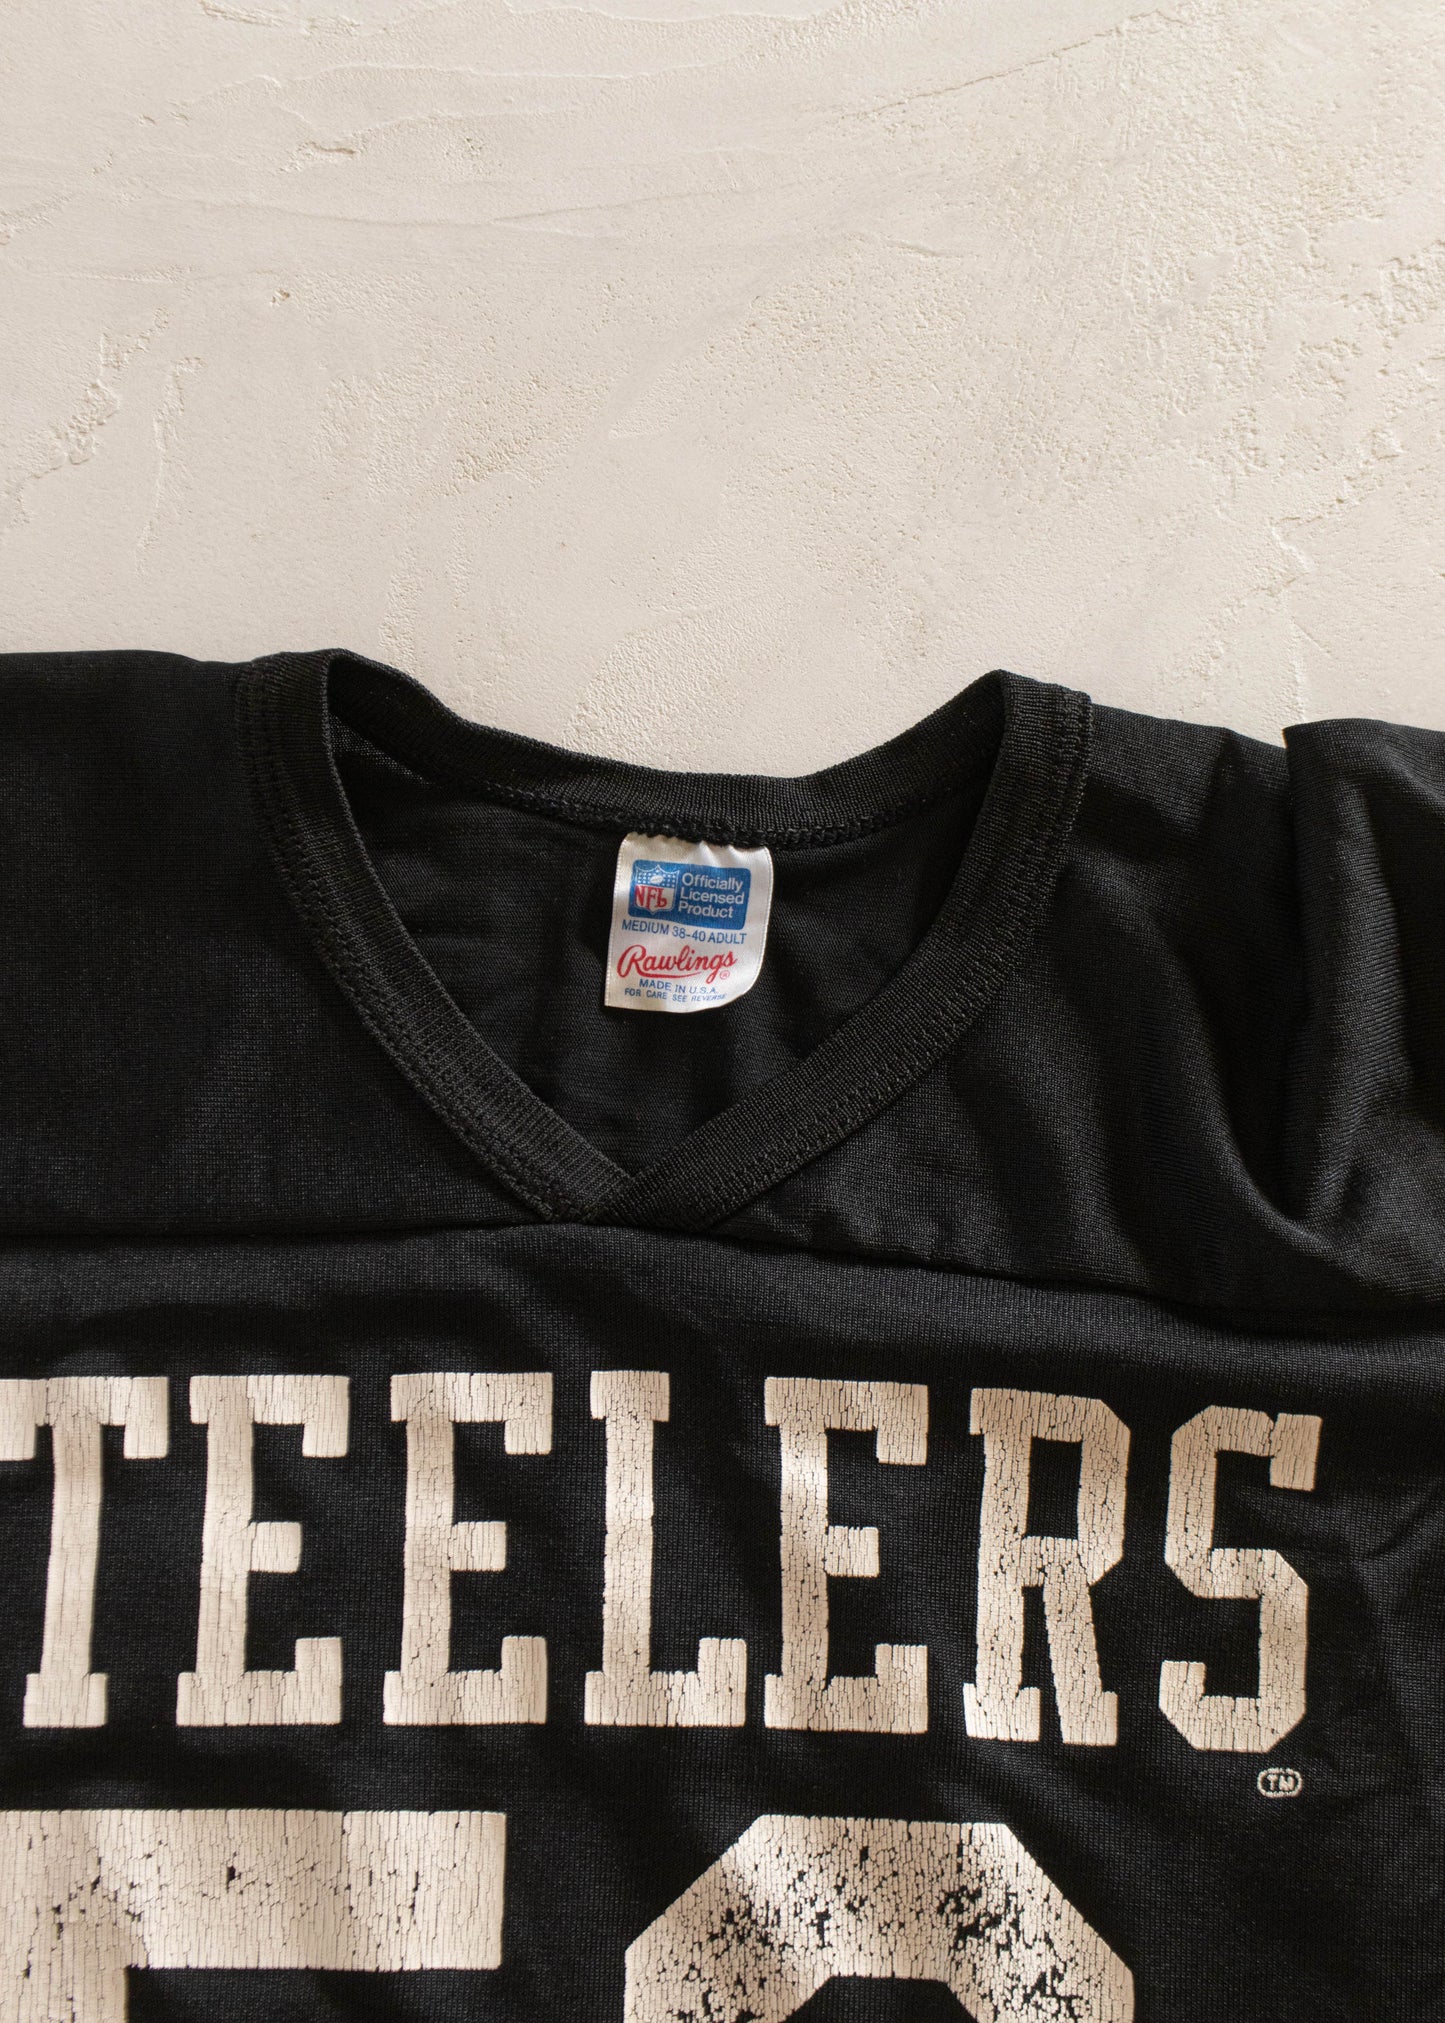 1980s Rawlings Steelers Sport Jersey Size M/L